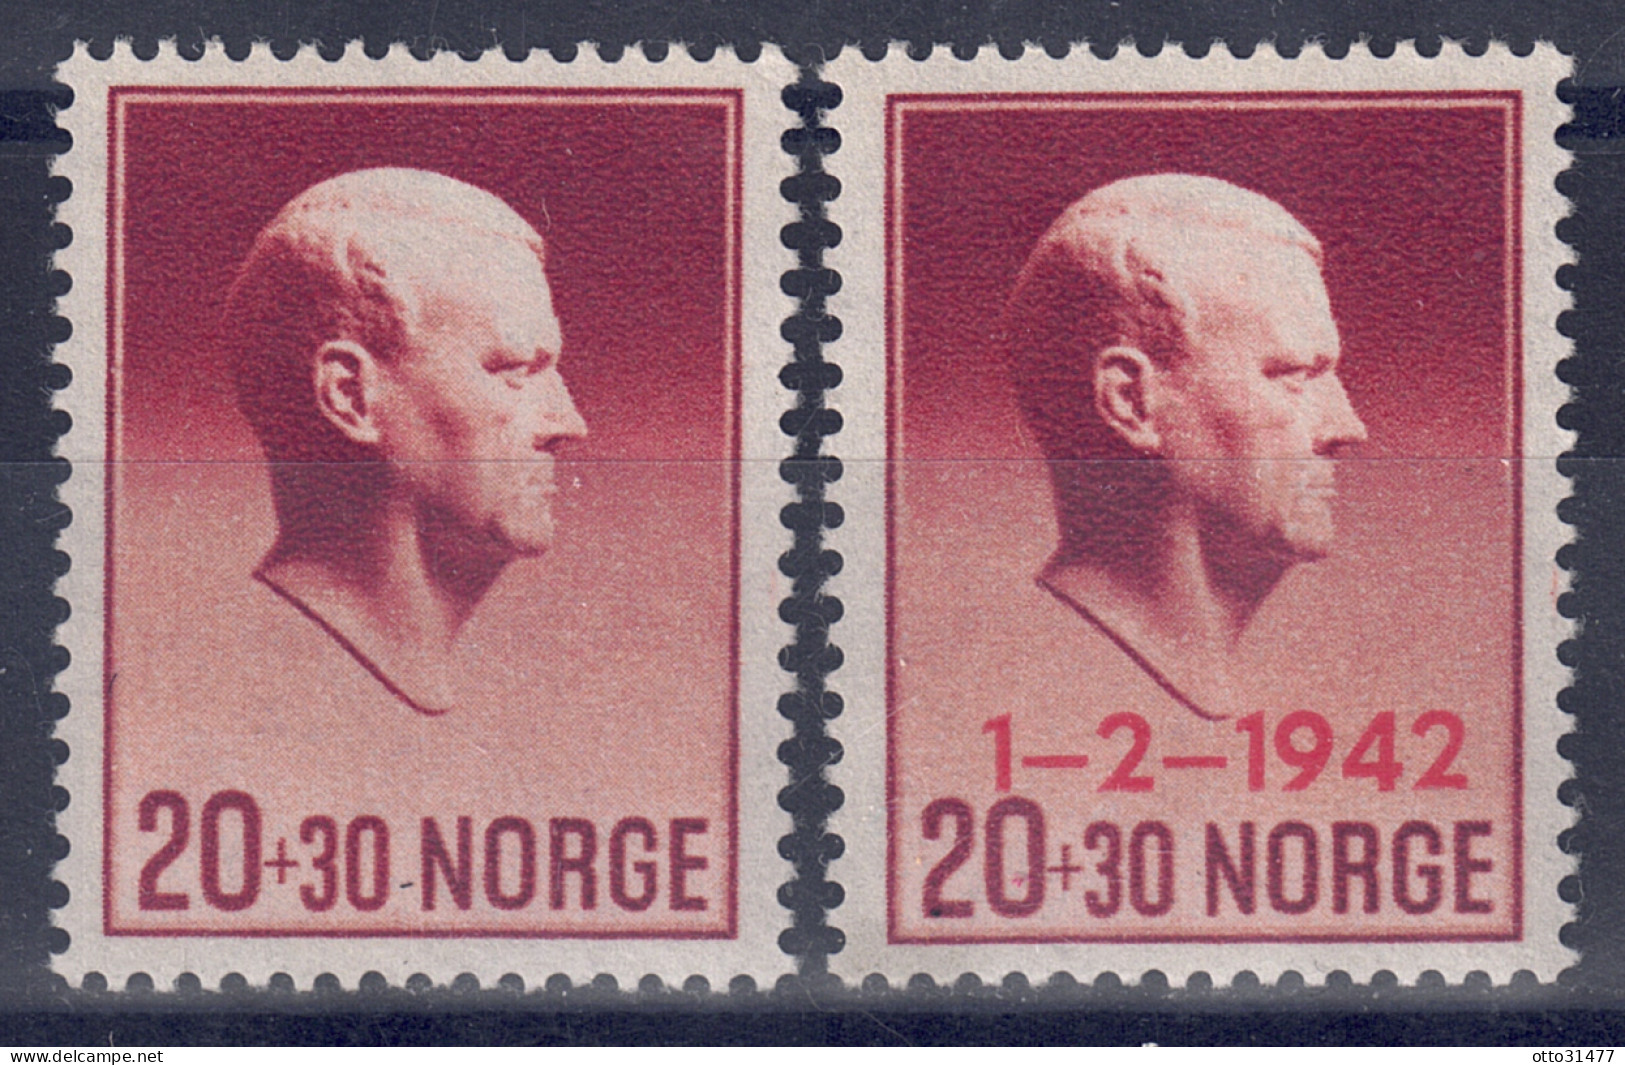 Norwegen 1942 - Hilfsfonds, Nr. 265 - 266, Postfrisch ** / MNH - Ongebruikt